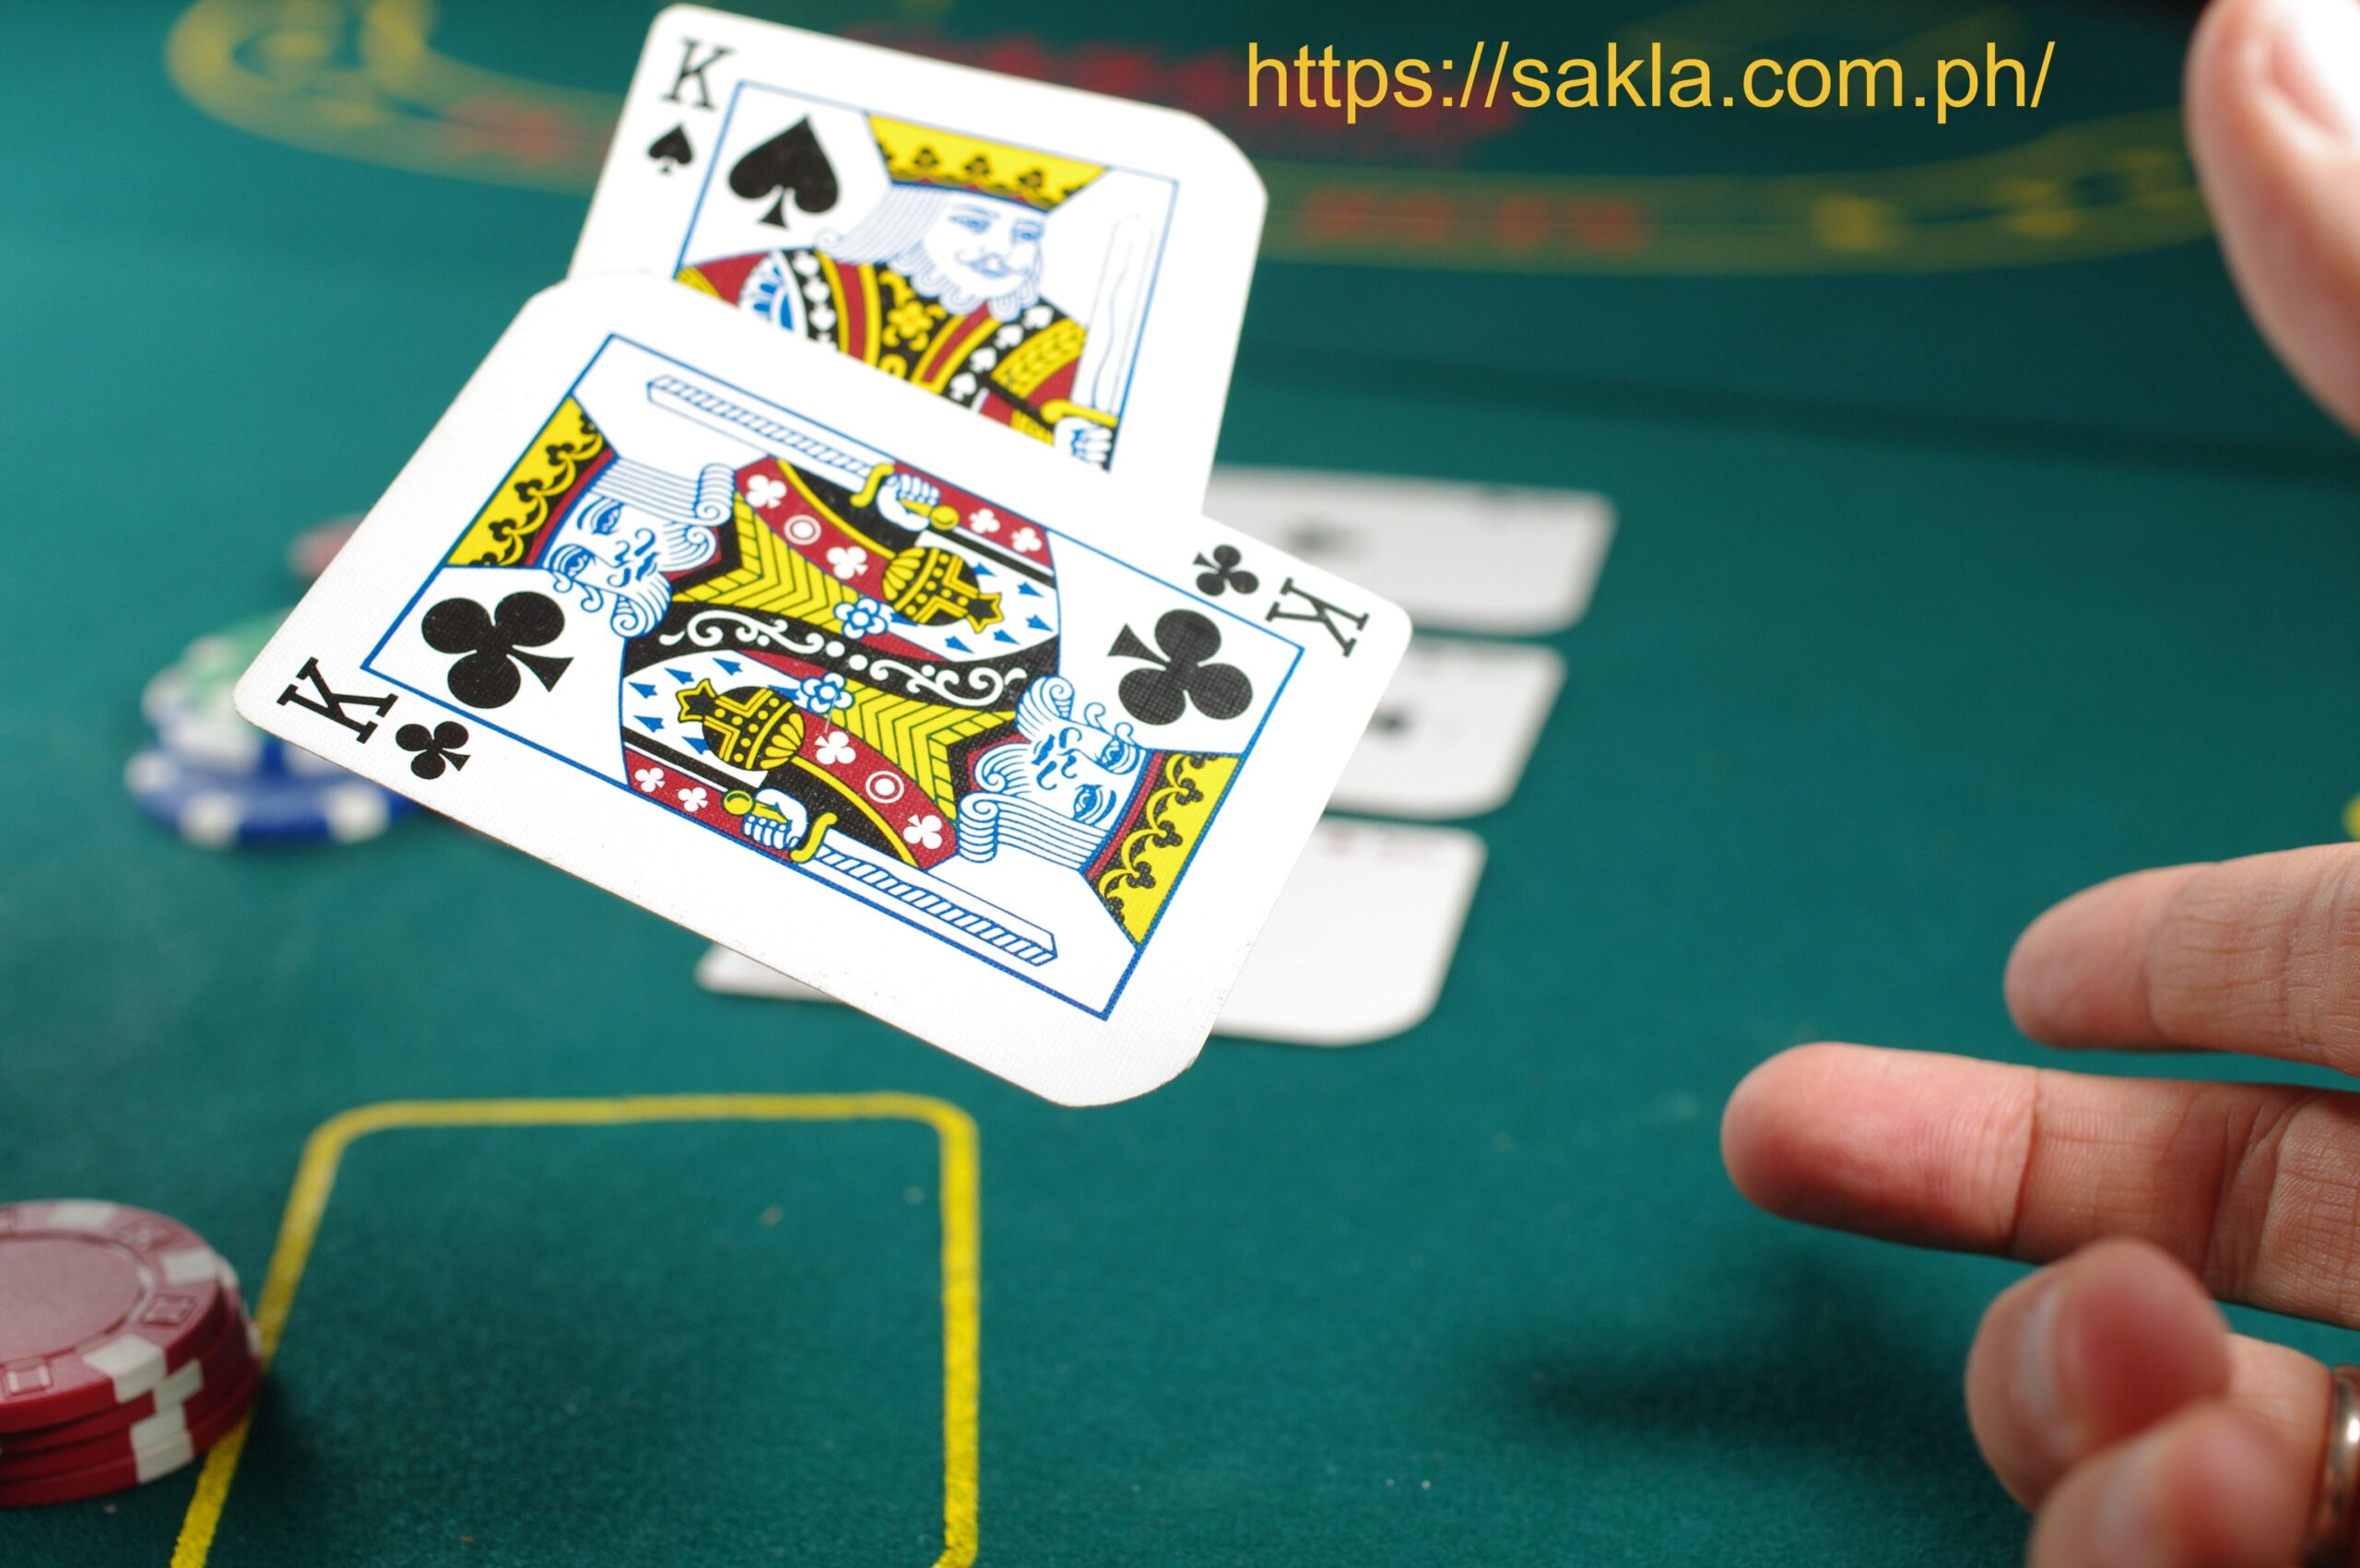 legal status of casino games